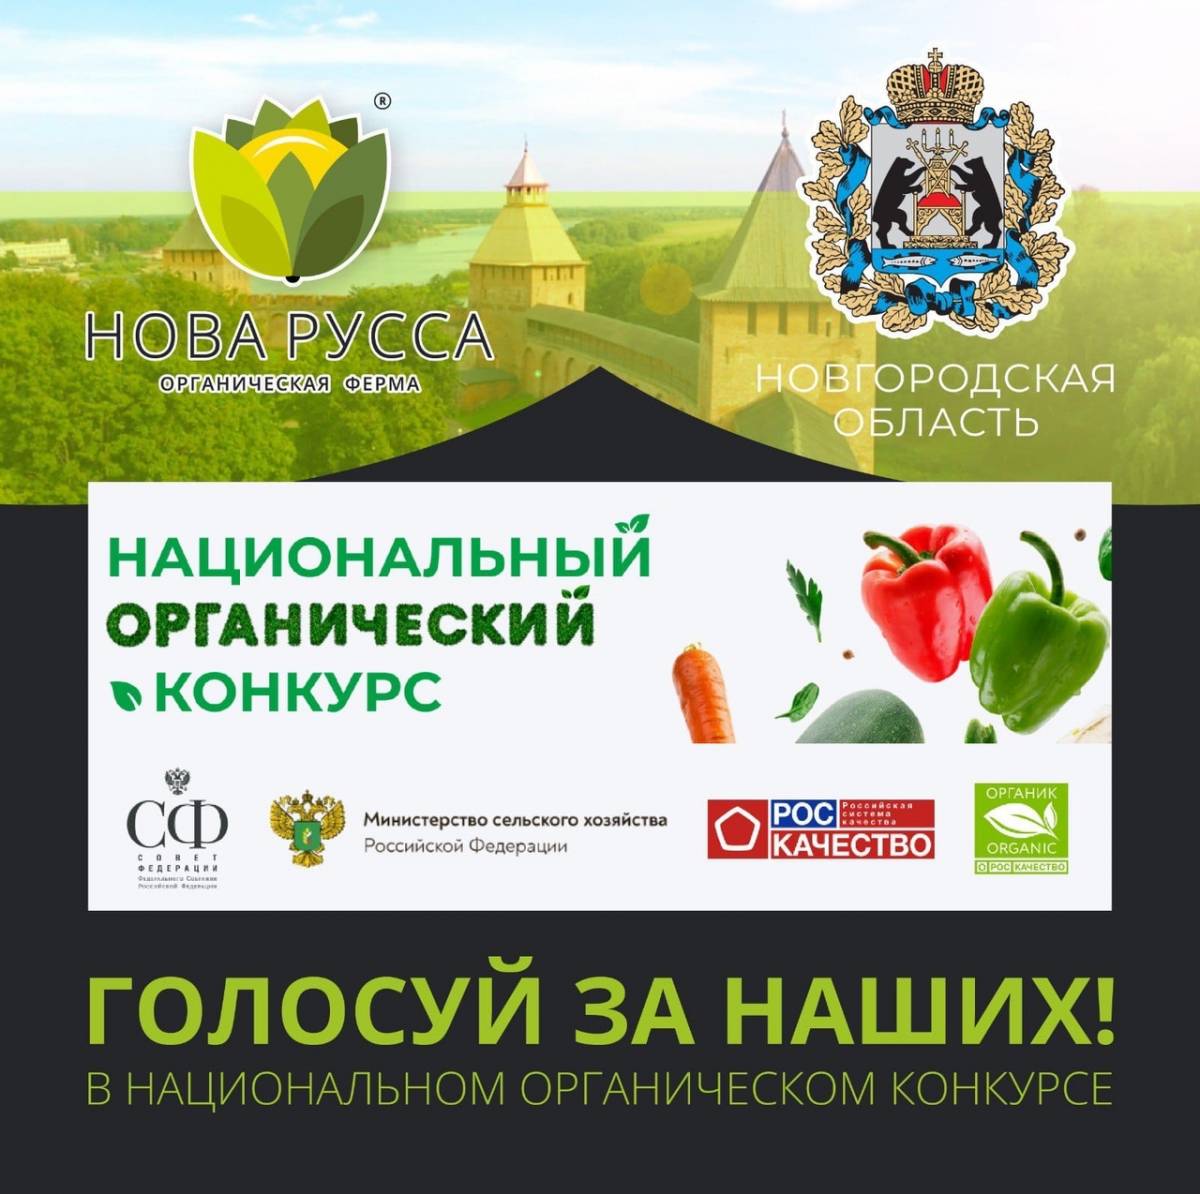 Новгородский бренд участвует в престижном национальном органическом конкурсе